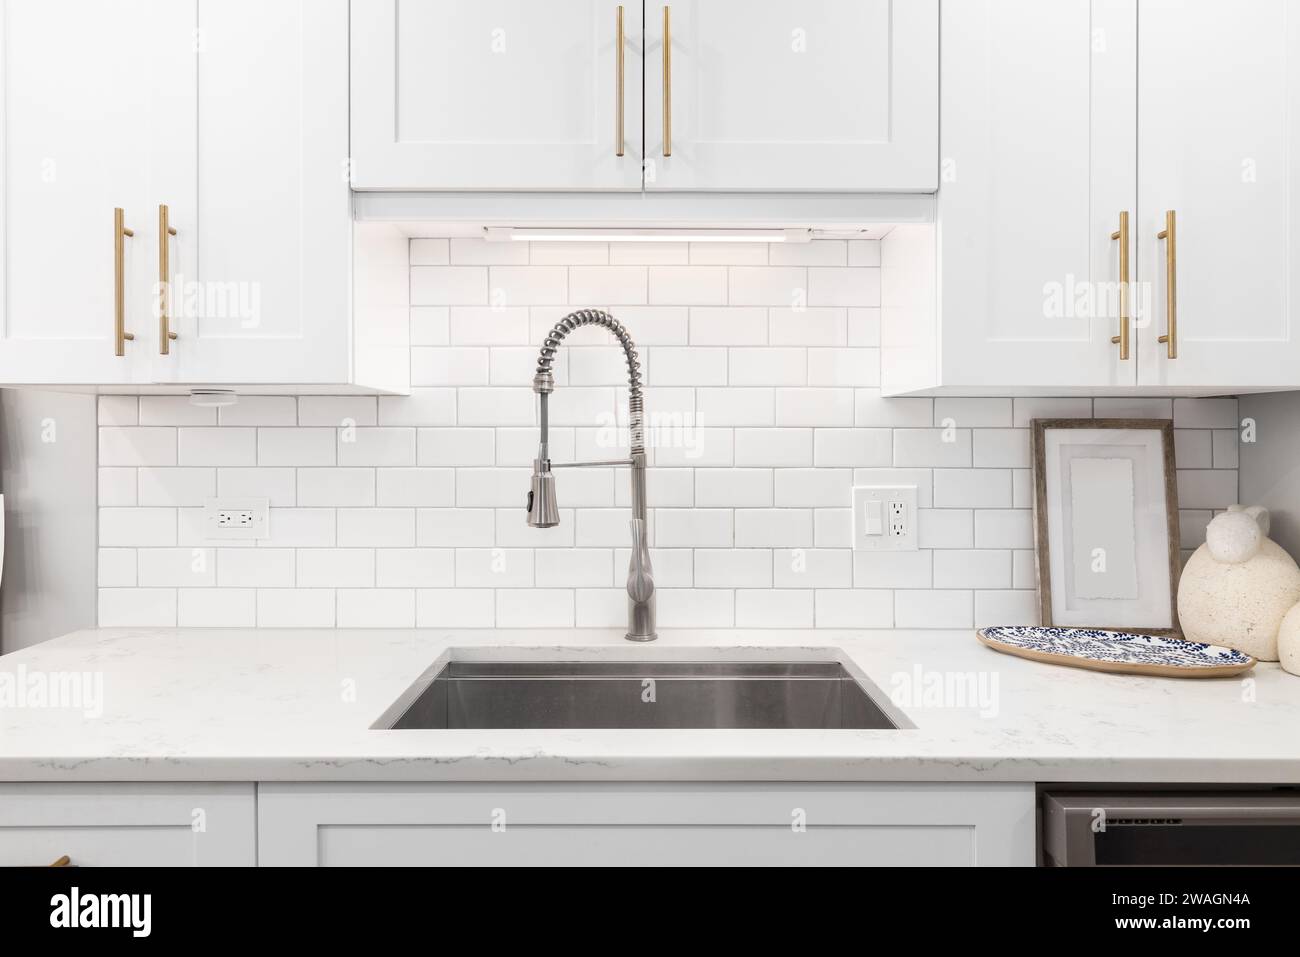 Un détail de robinet de cuisine avec des armoires blanches, de la quincaillerie dorée et un dosseret de tuile de métro. Banque D'Images